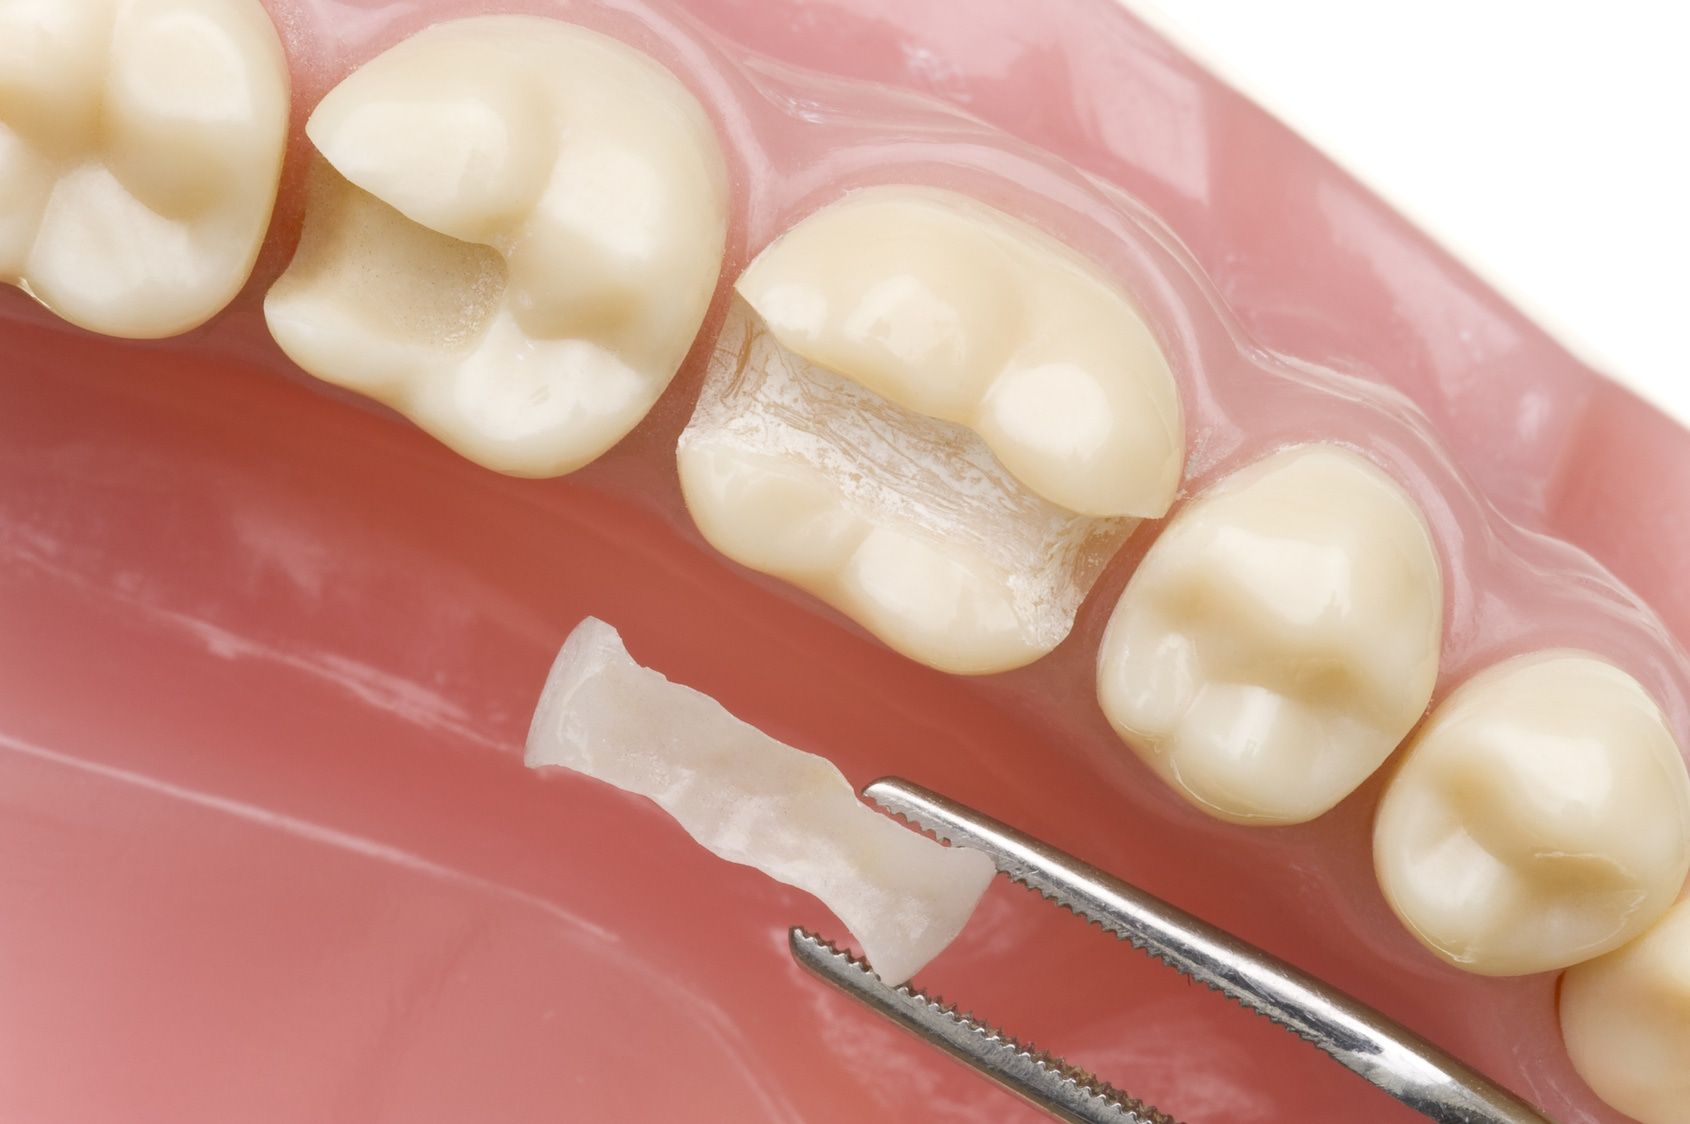 Чем вкладки отличаются от пломбирования зубов?